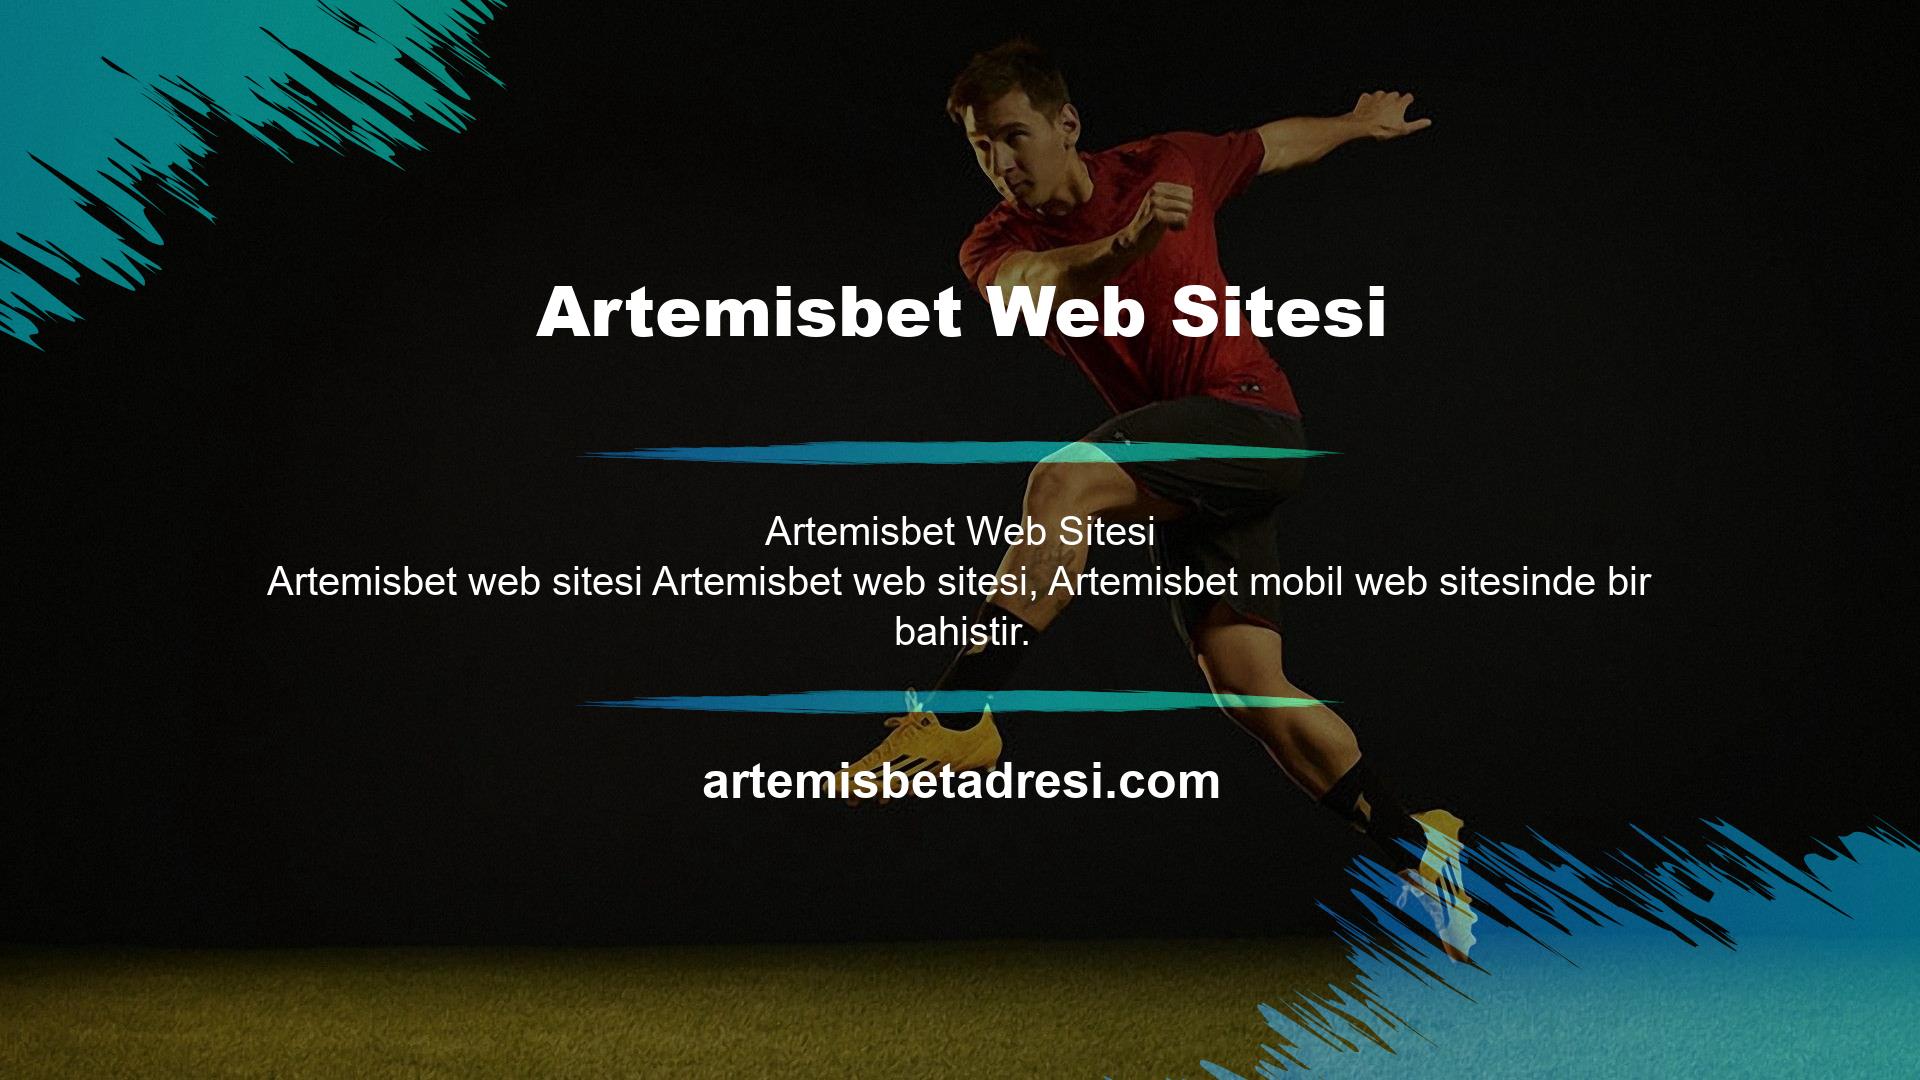 Genel olarak konuşursak, Artemisbet mobil girişinin kullanımı kolaydır ve Artemisbet mobil girişi, mobil kullanıcılar için bir web sitesi versiyonudur